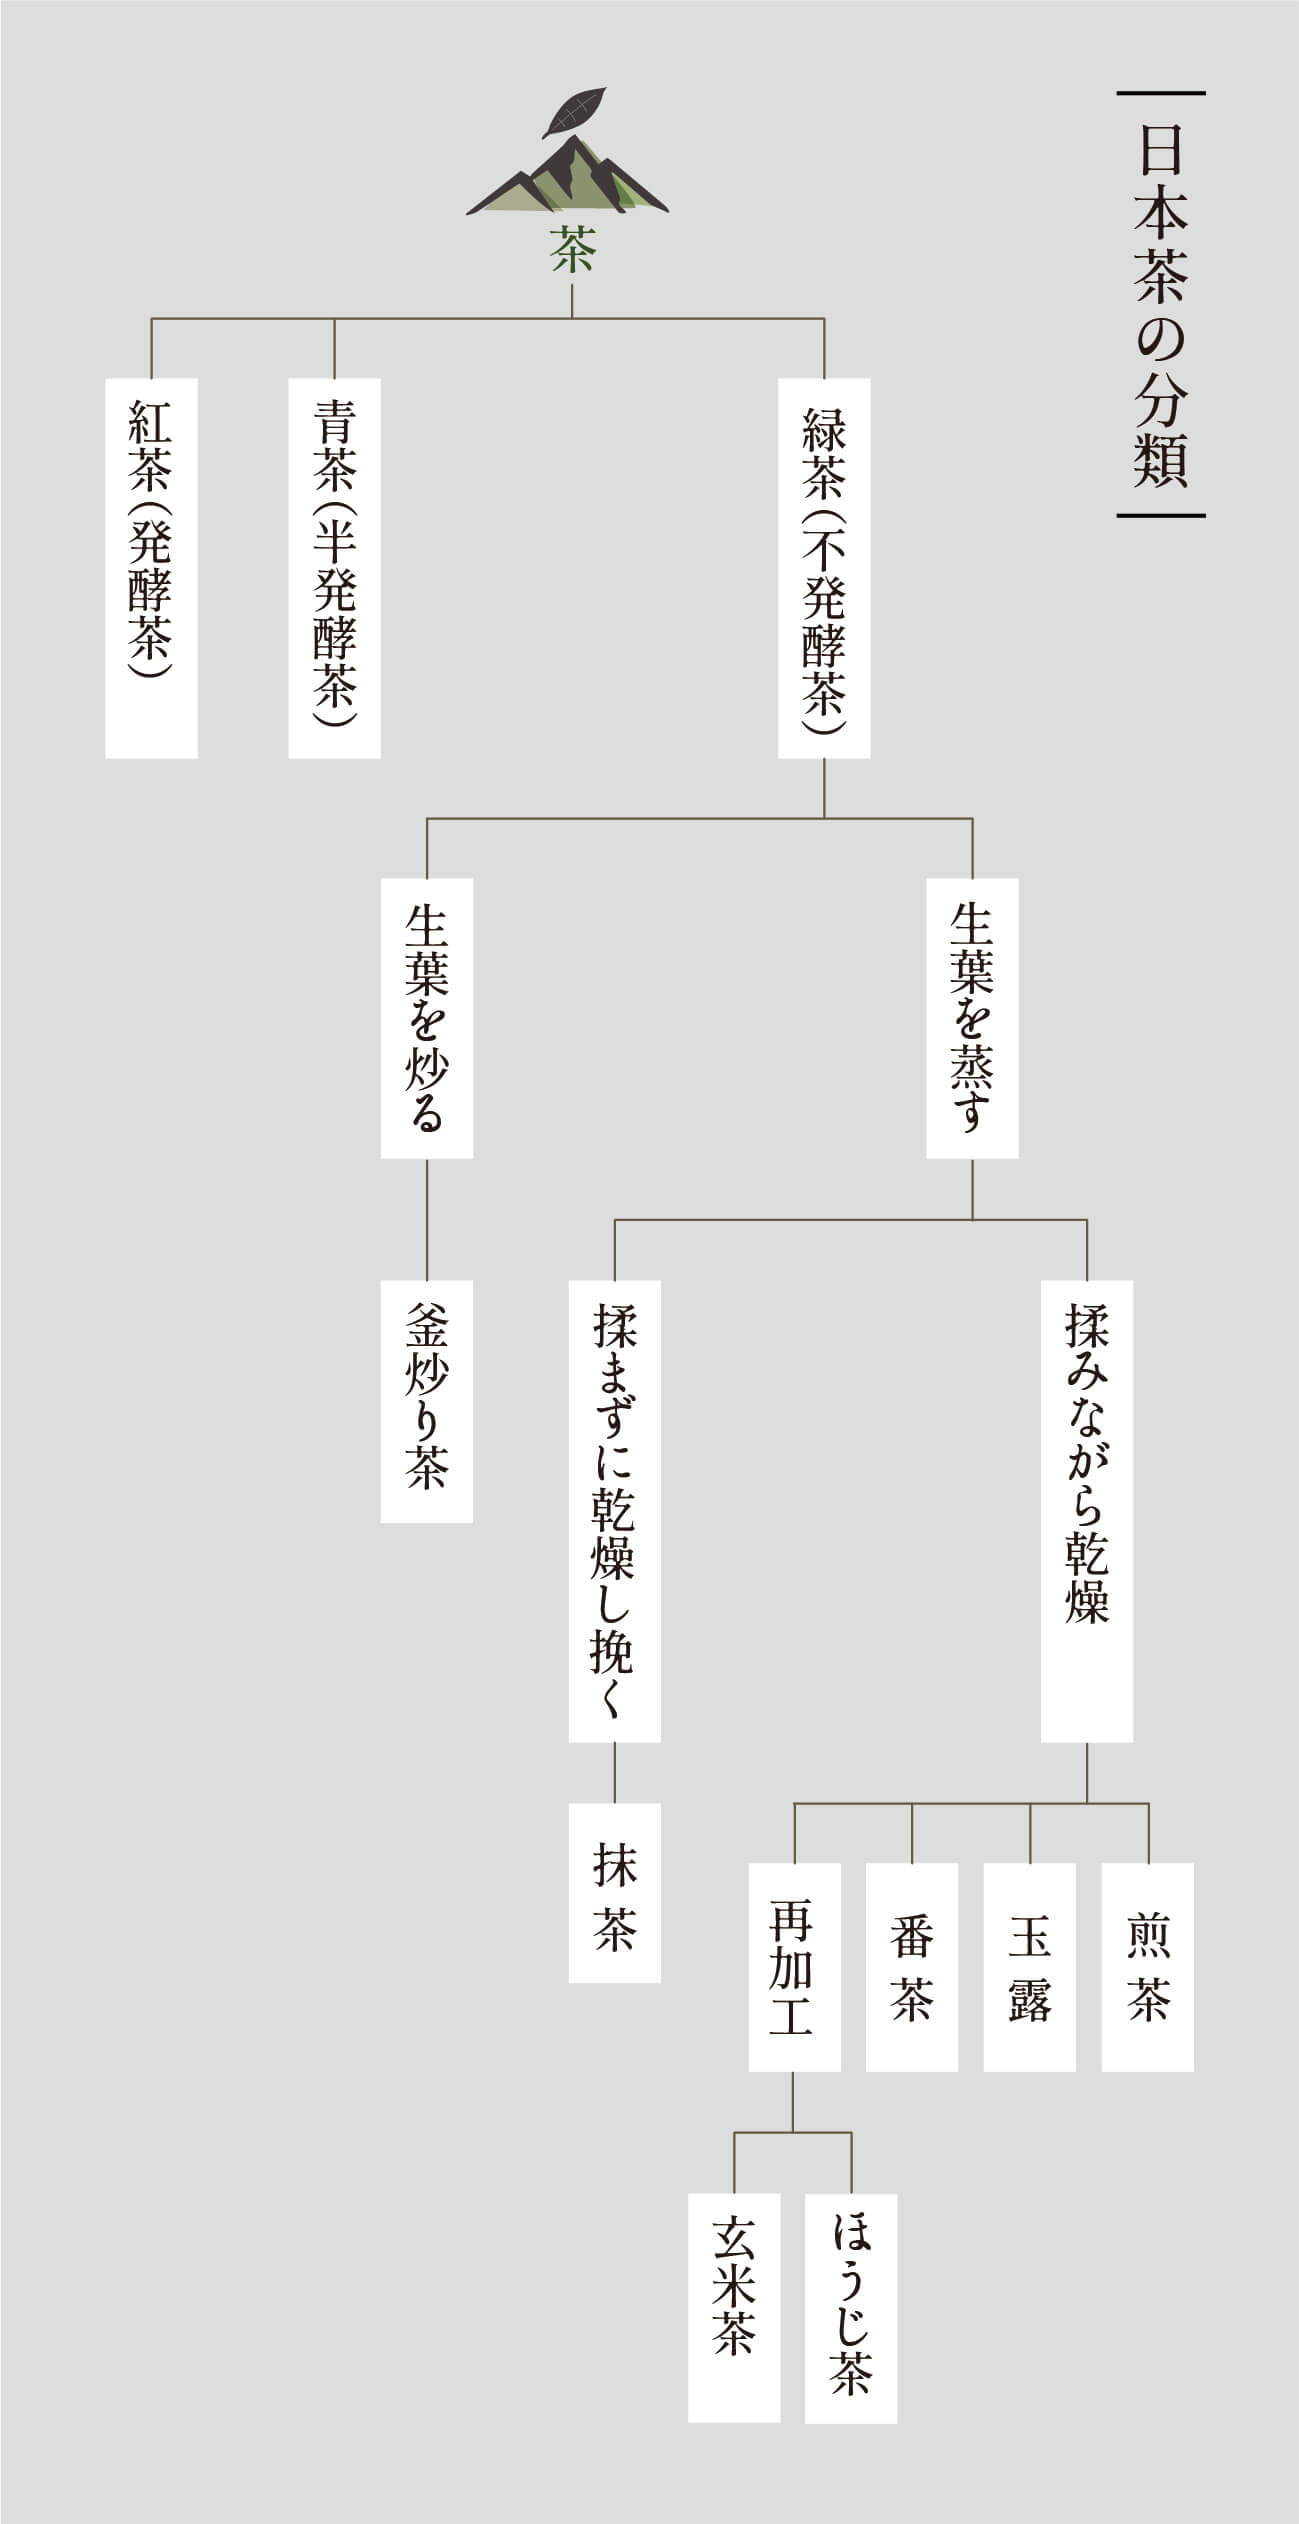 日本茶の系統図